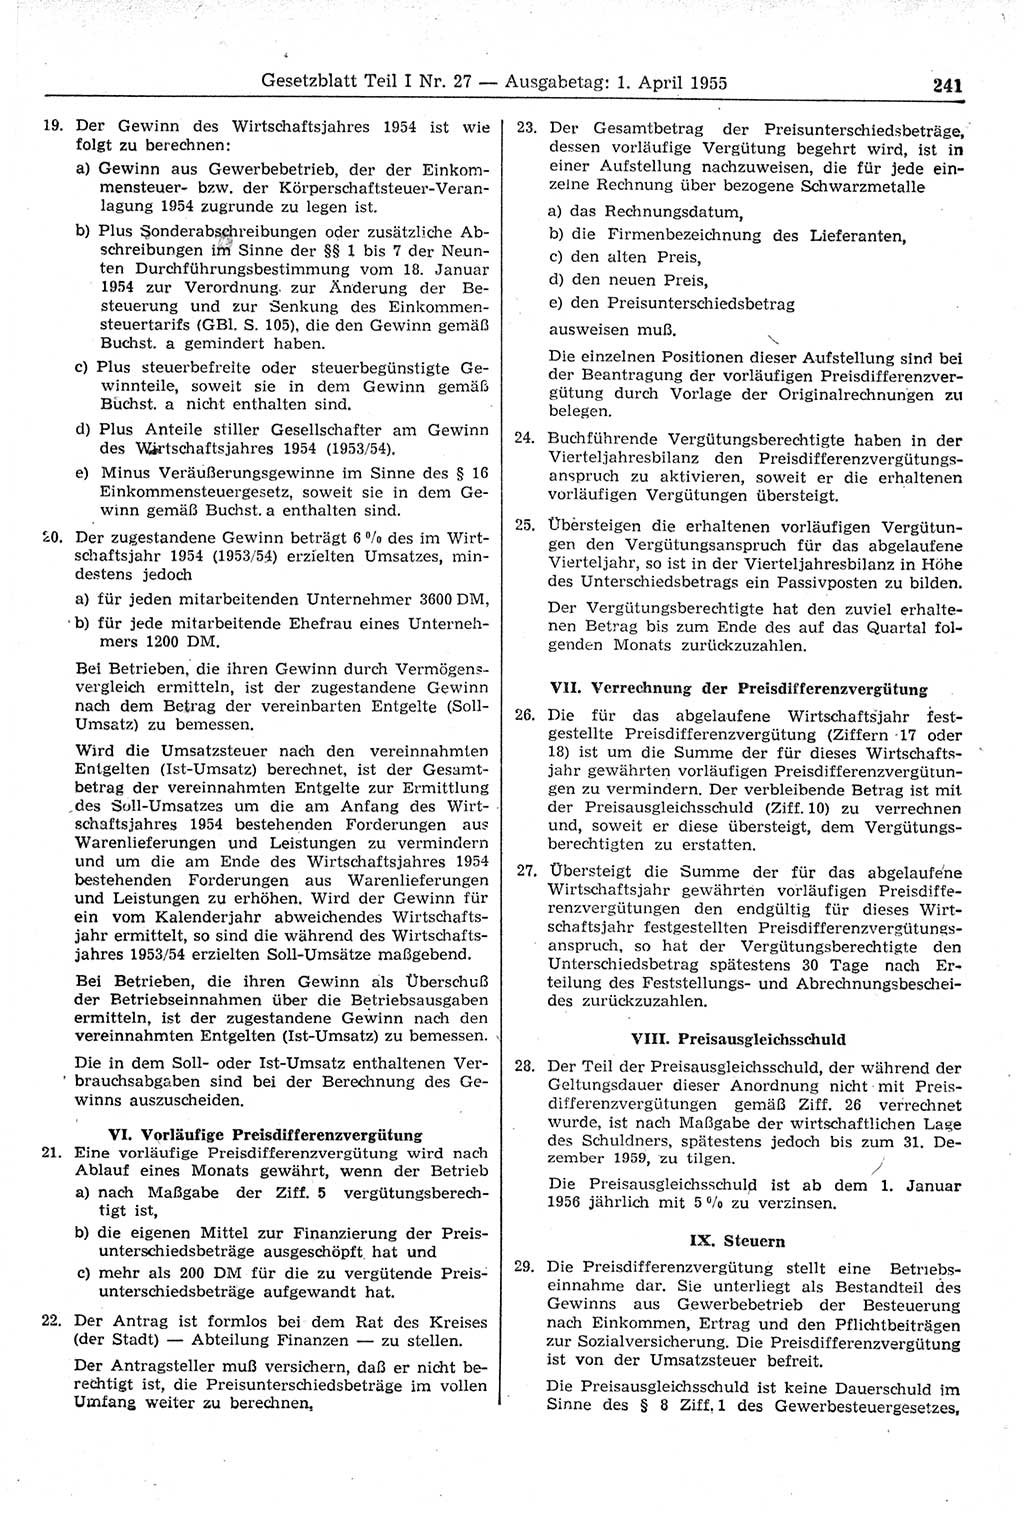 Gesetzblatt (GBl.) der Deutschen Demokratischen Republik (DDR) Teil Ⅰ 1955, Seite 241 (GBl. DDR Ⅰ 1955, S. 241)